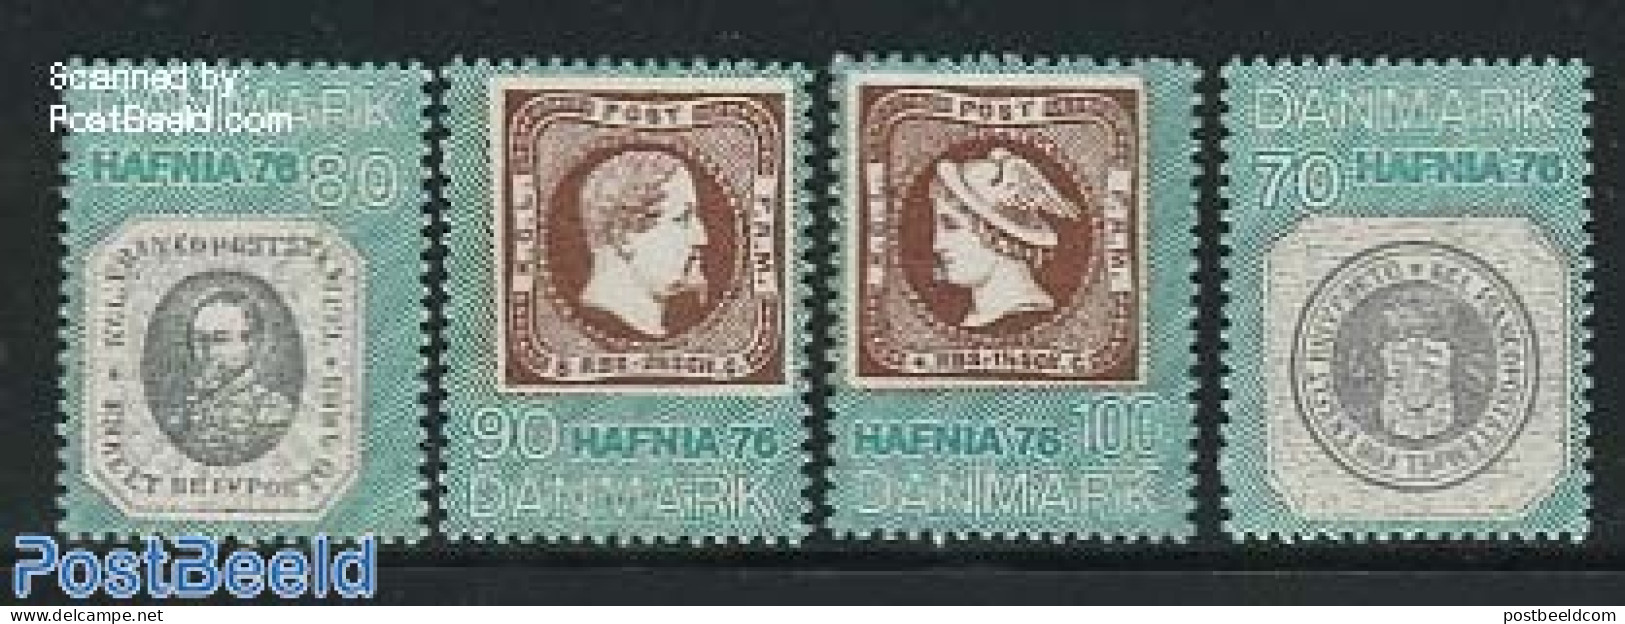 Denmark 1975 Hafnia 76 4v, Mint NH, Stamps On Stamps - Nuevos